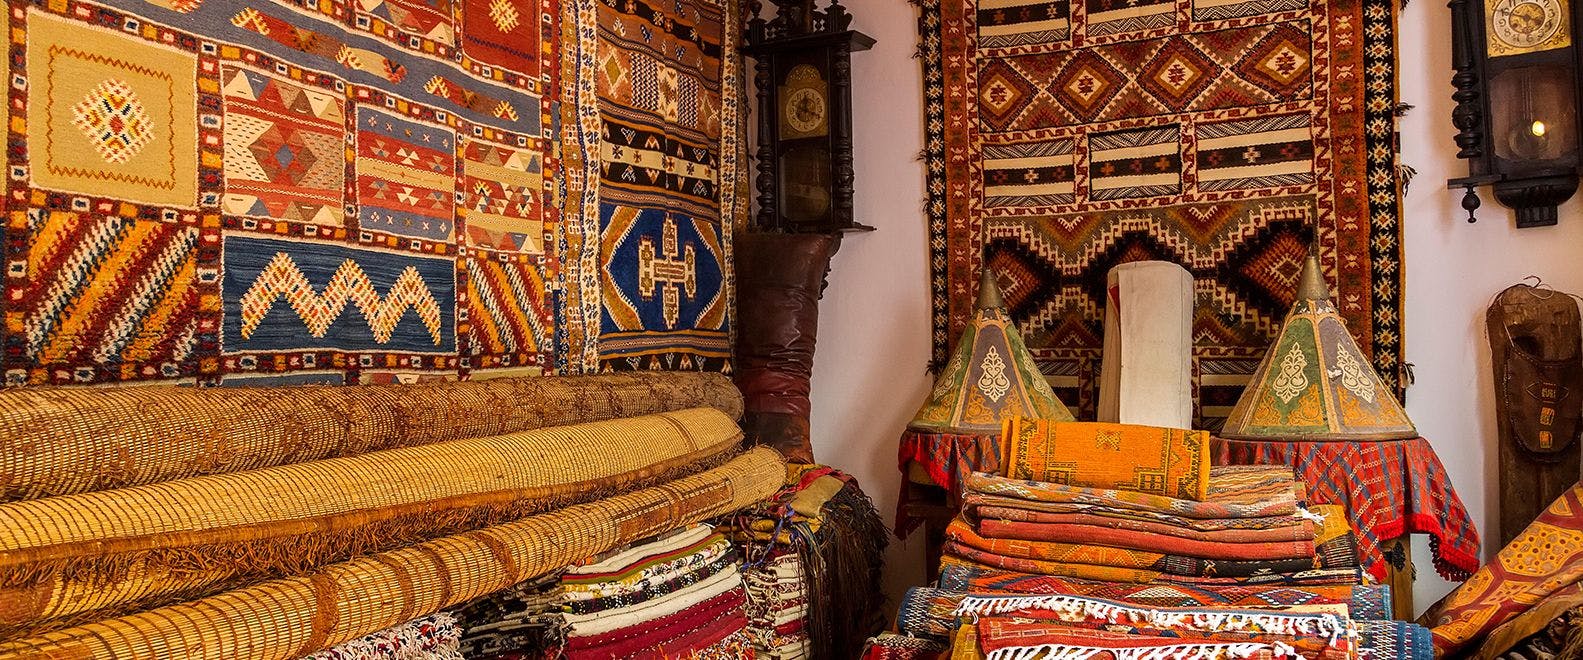 Artisanat de Tanger : un voyage au cœur de l'authenticité culturelle